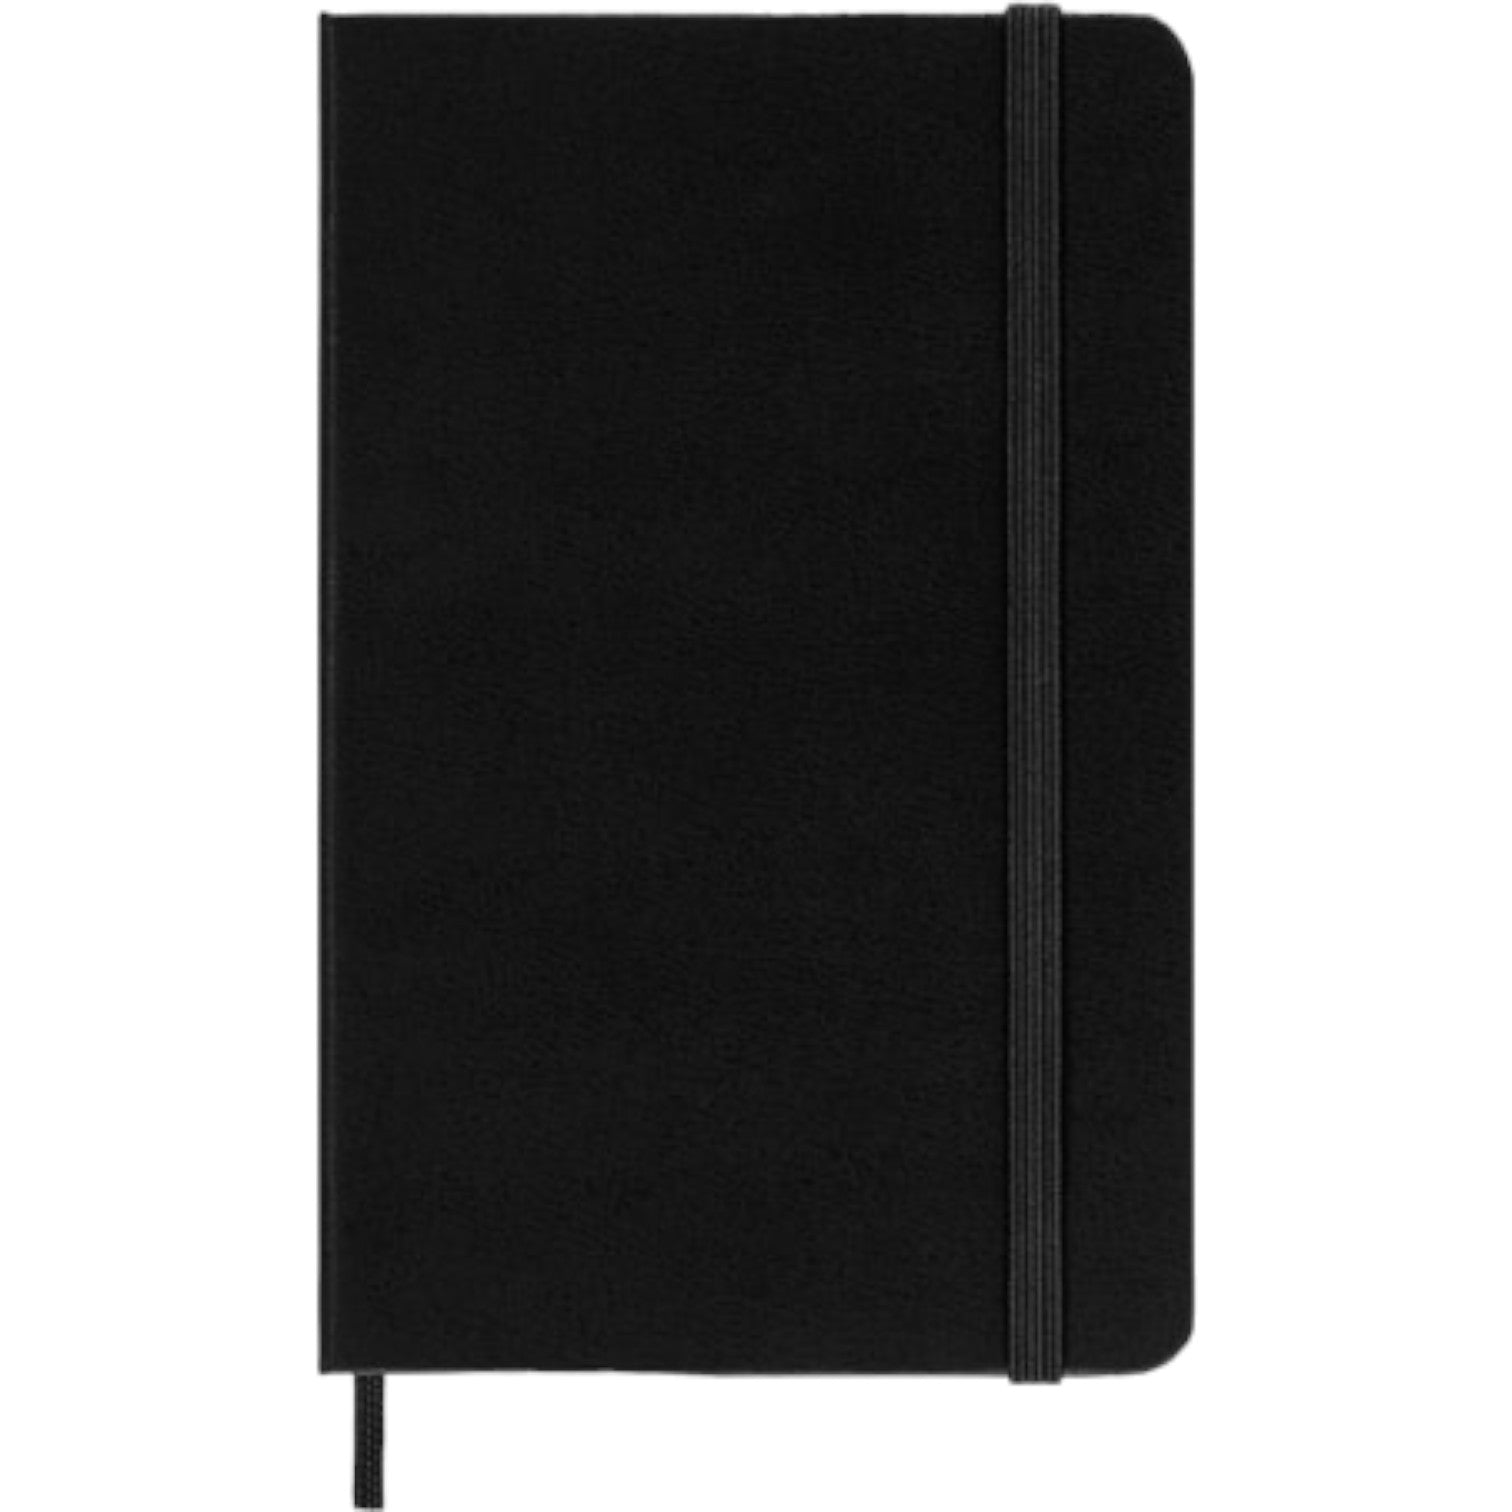 Pocket Notebook - Hard Cover - Ruled - Black